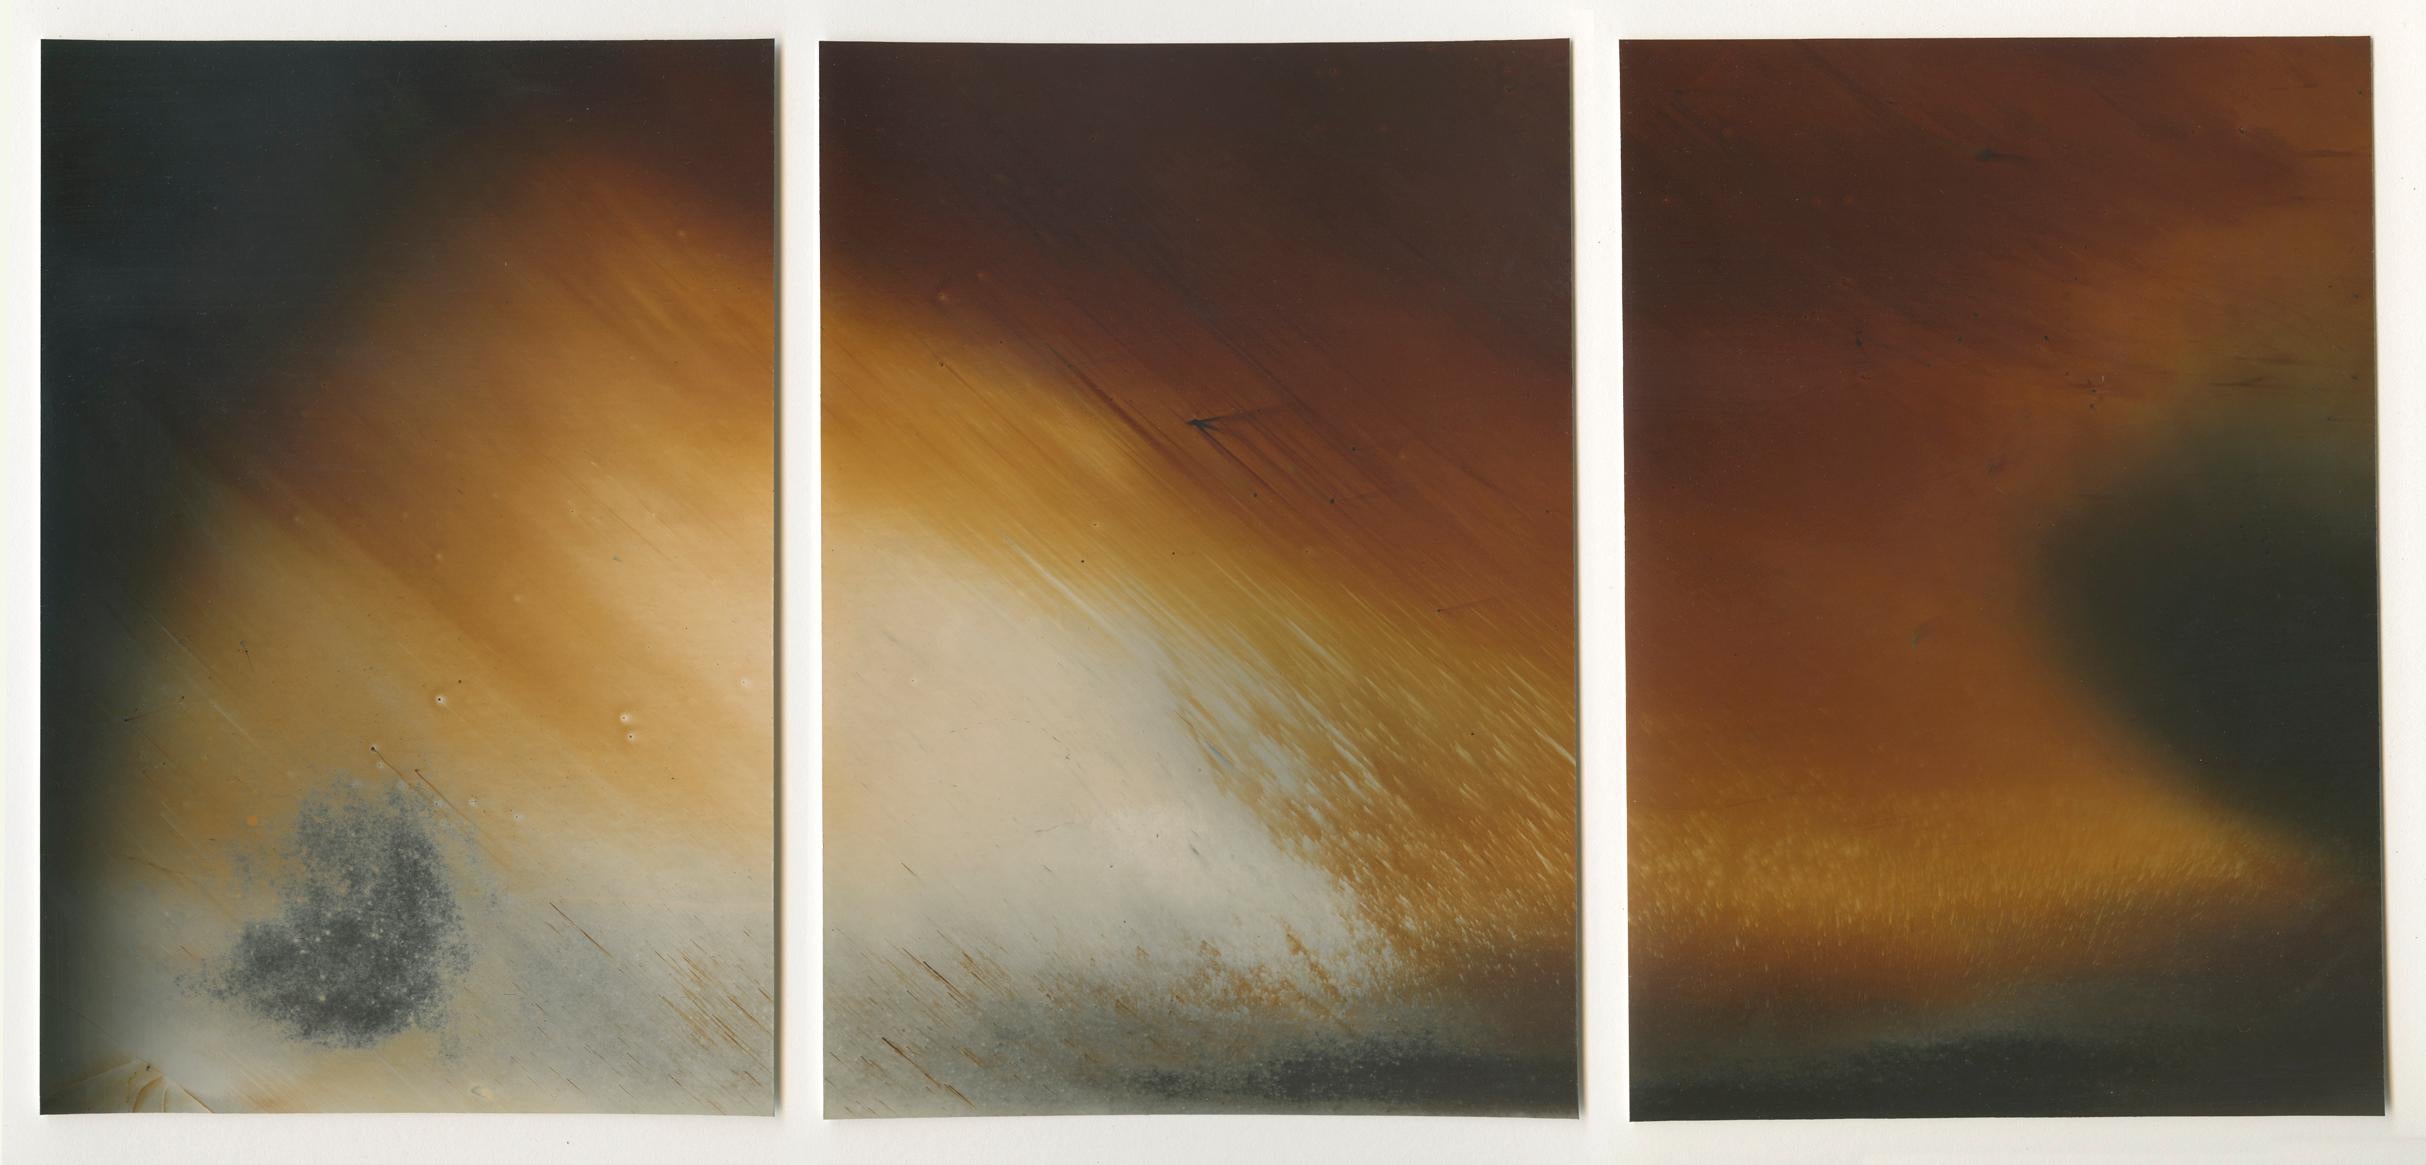 Abstract Photograph Christopher Colville - Triptyque sans titre